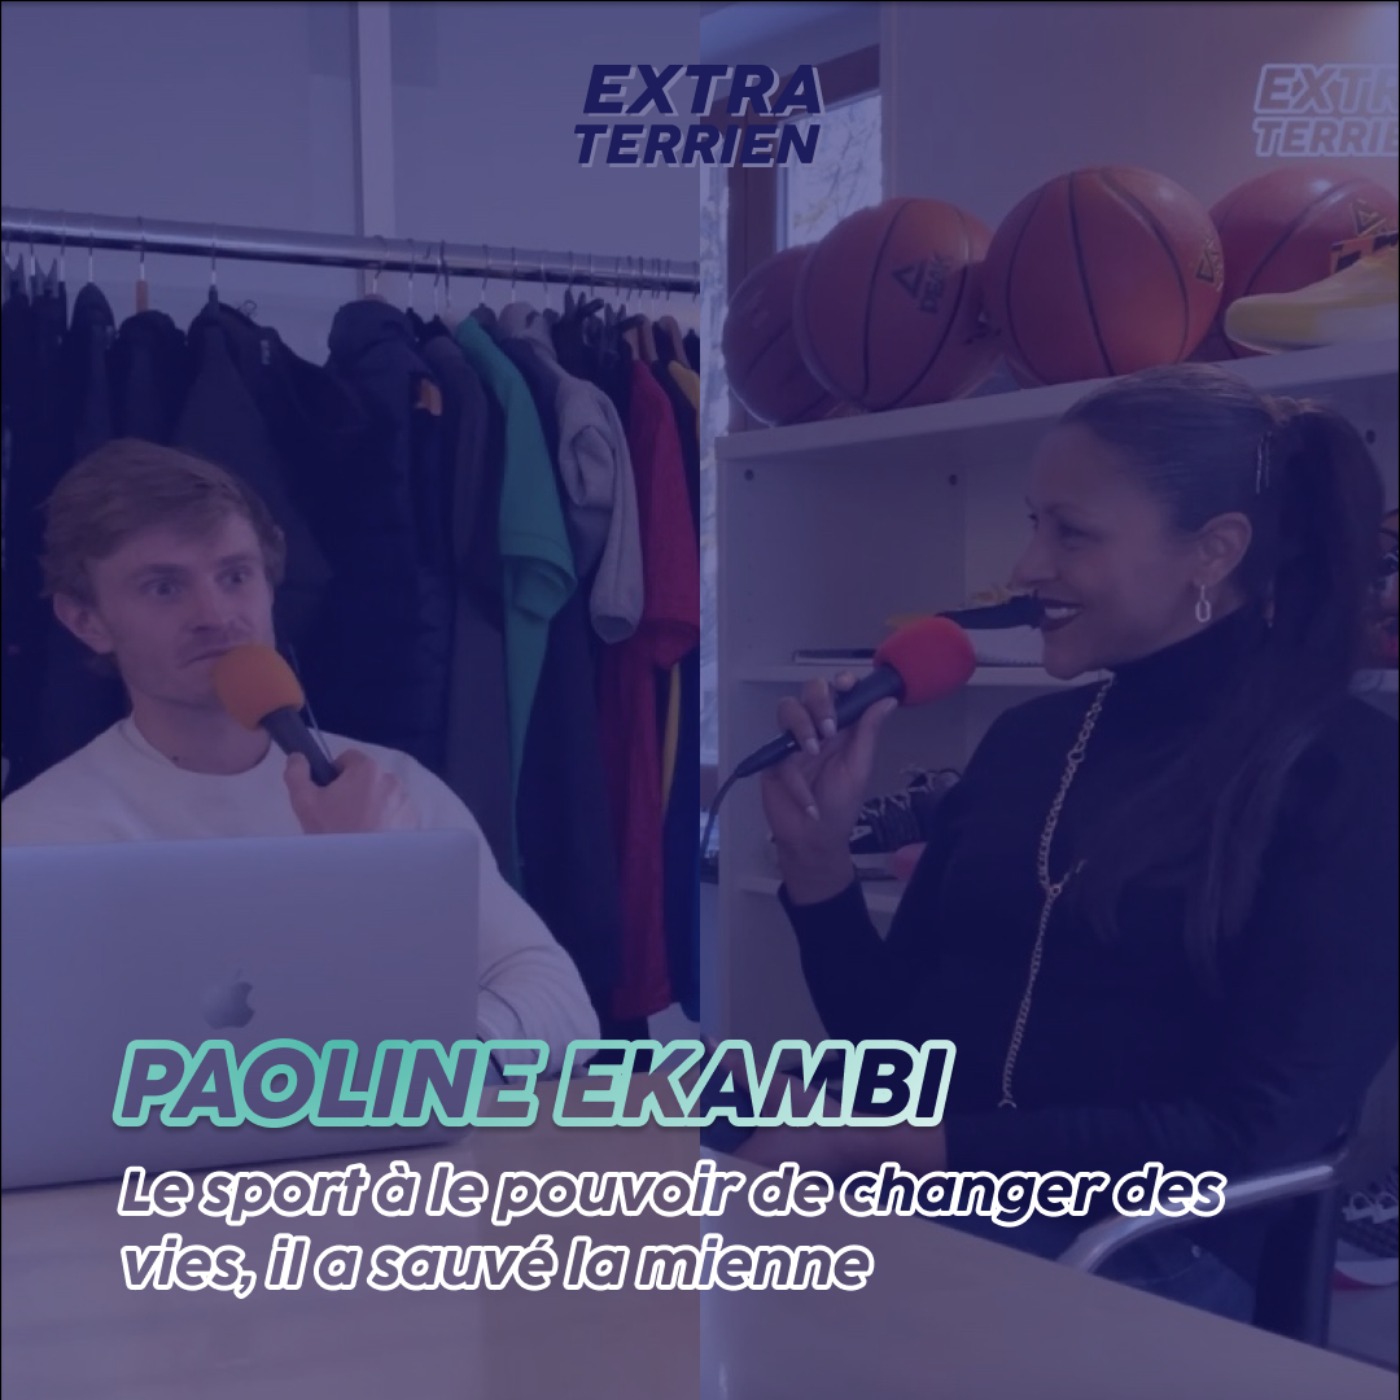 Extrait - Paoline Ekambi